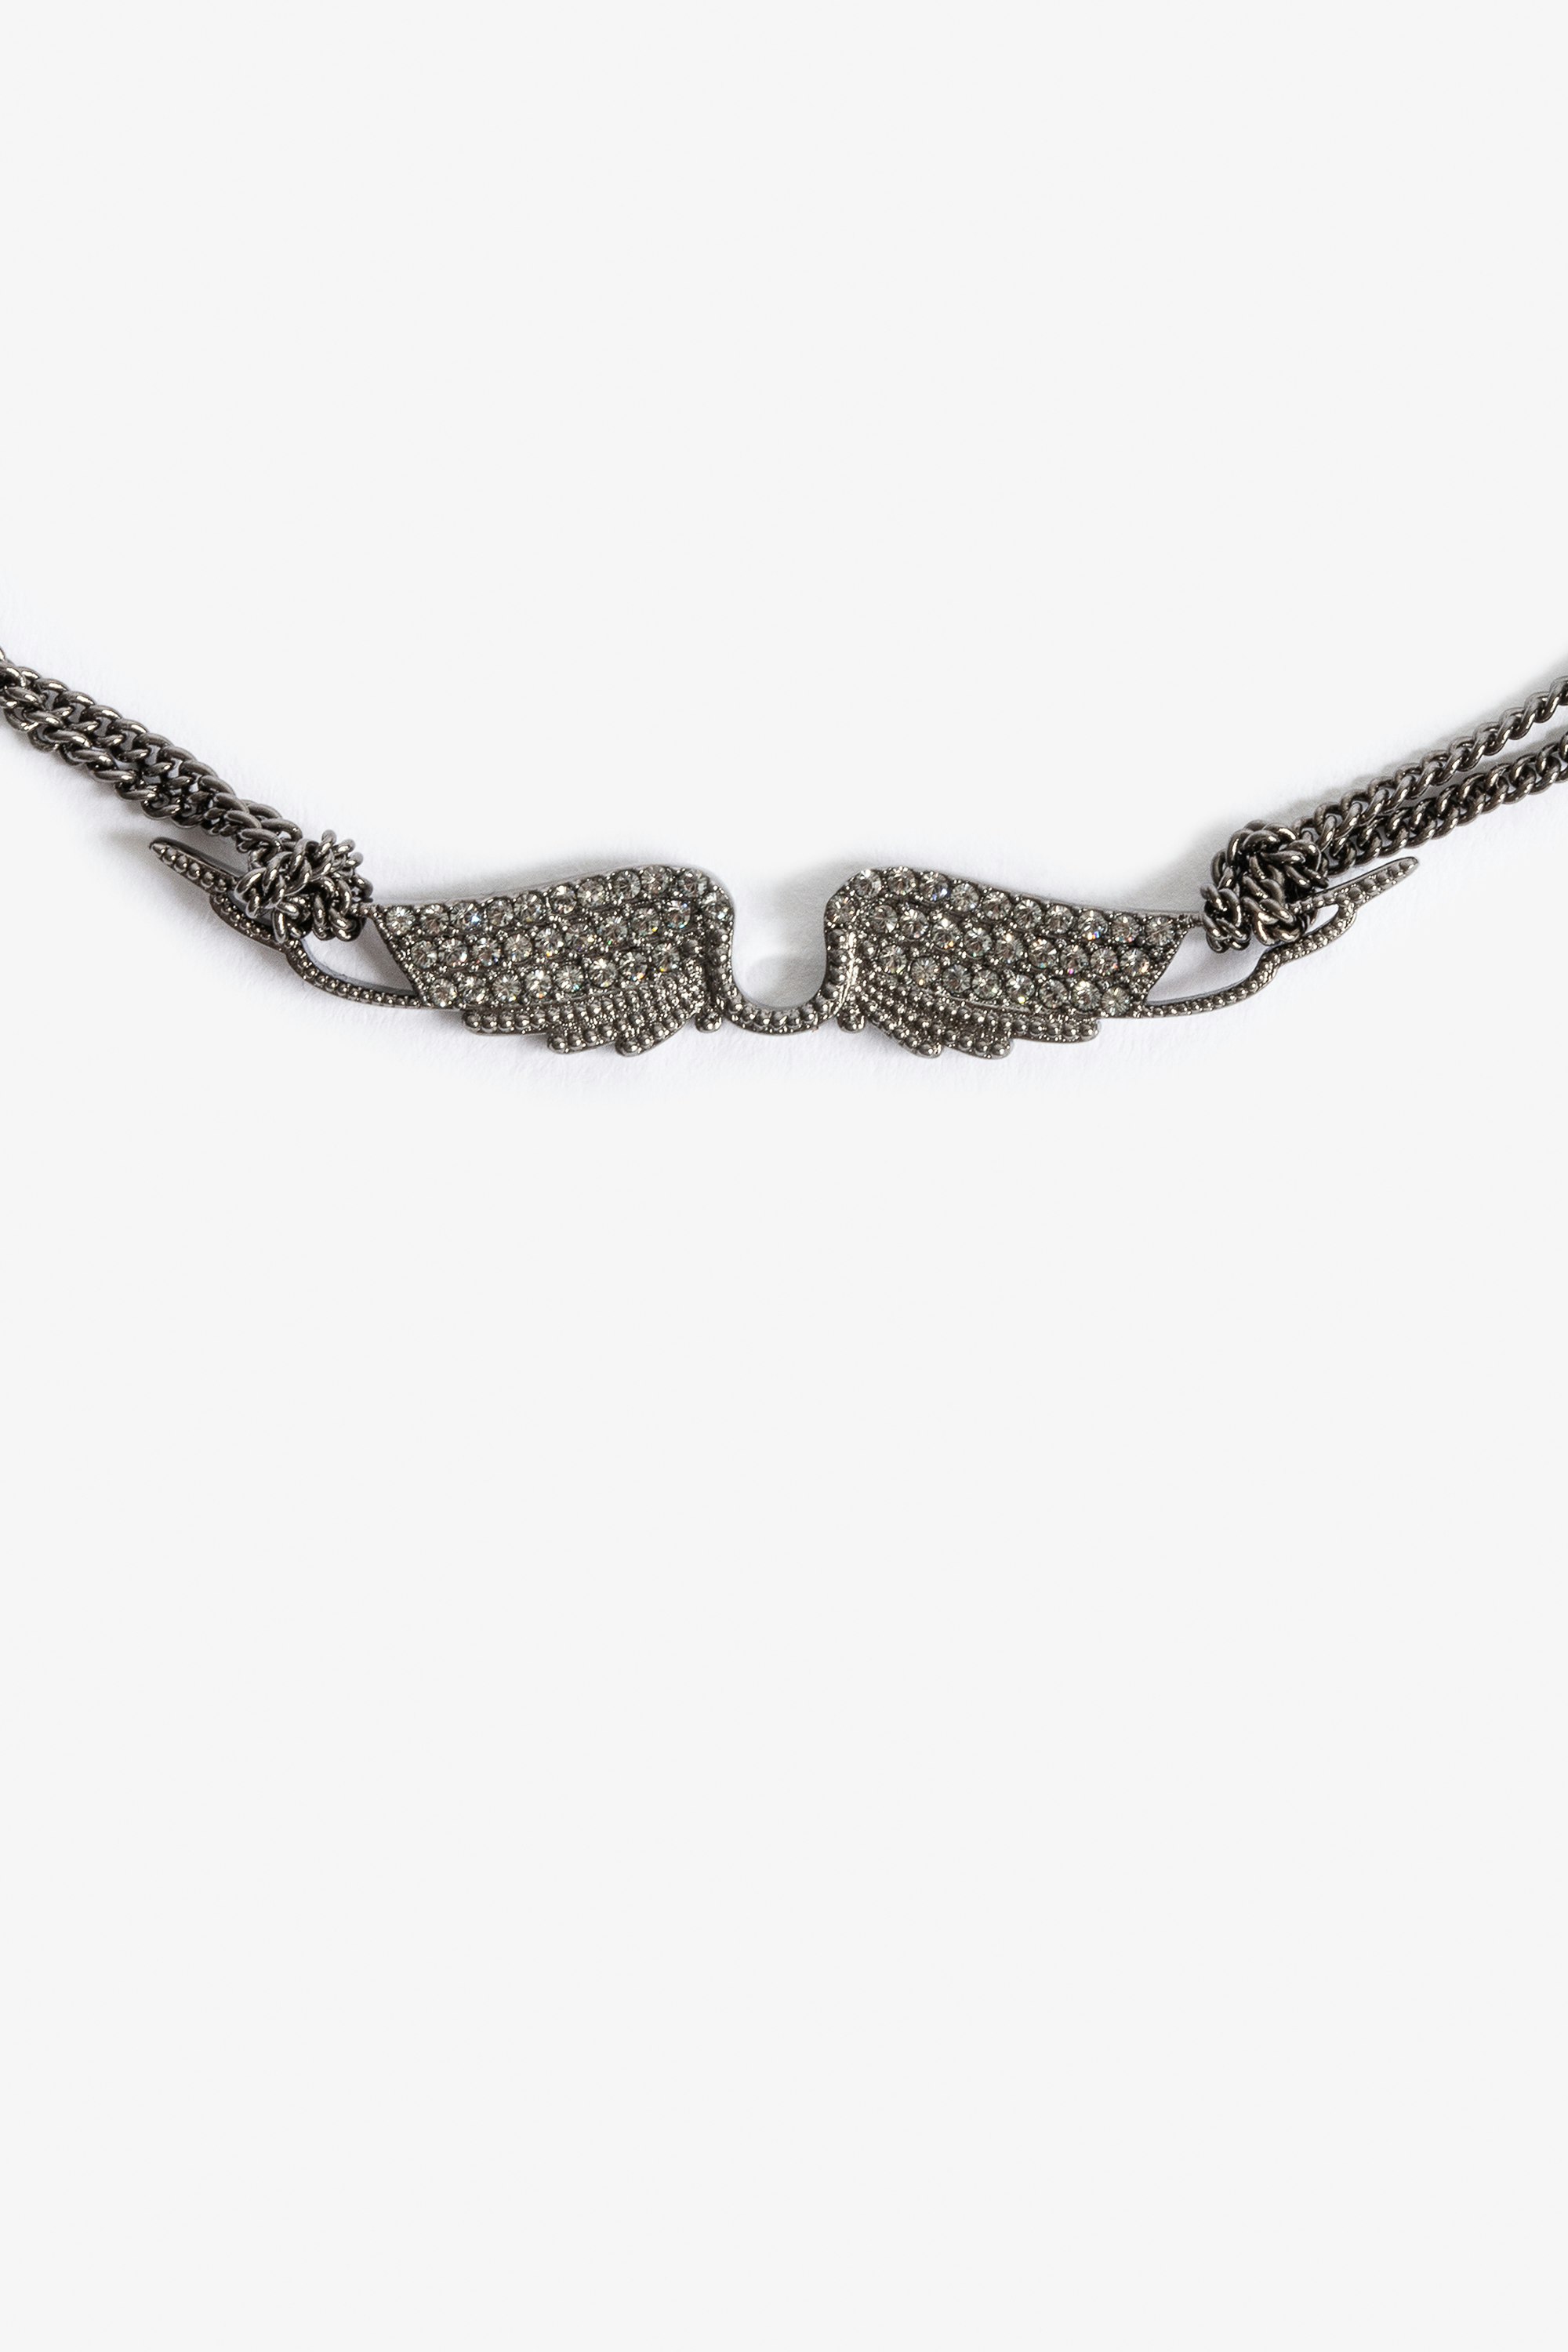 Halskette Rock Chocker - Kurze Halskette aus geschwärztem Messing mit kristallbesetztem Flügelanhänger.